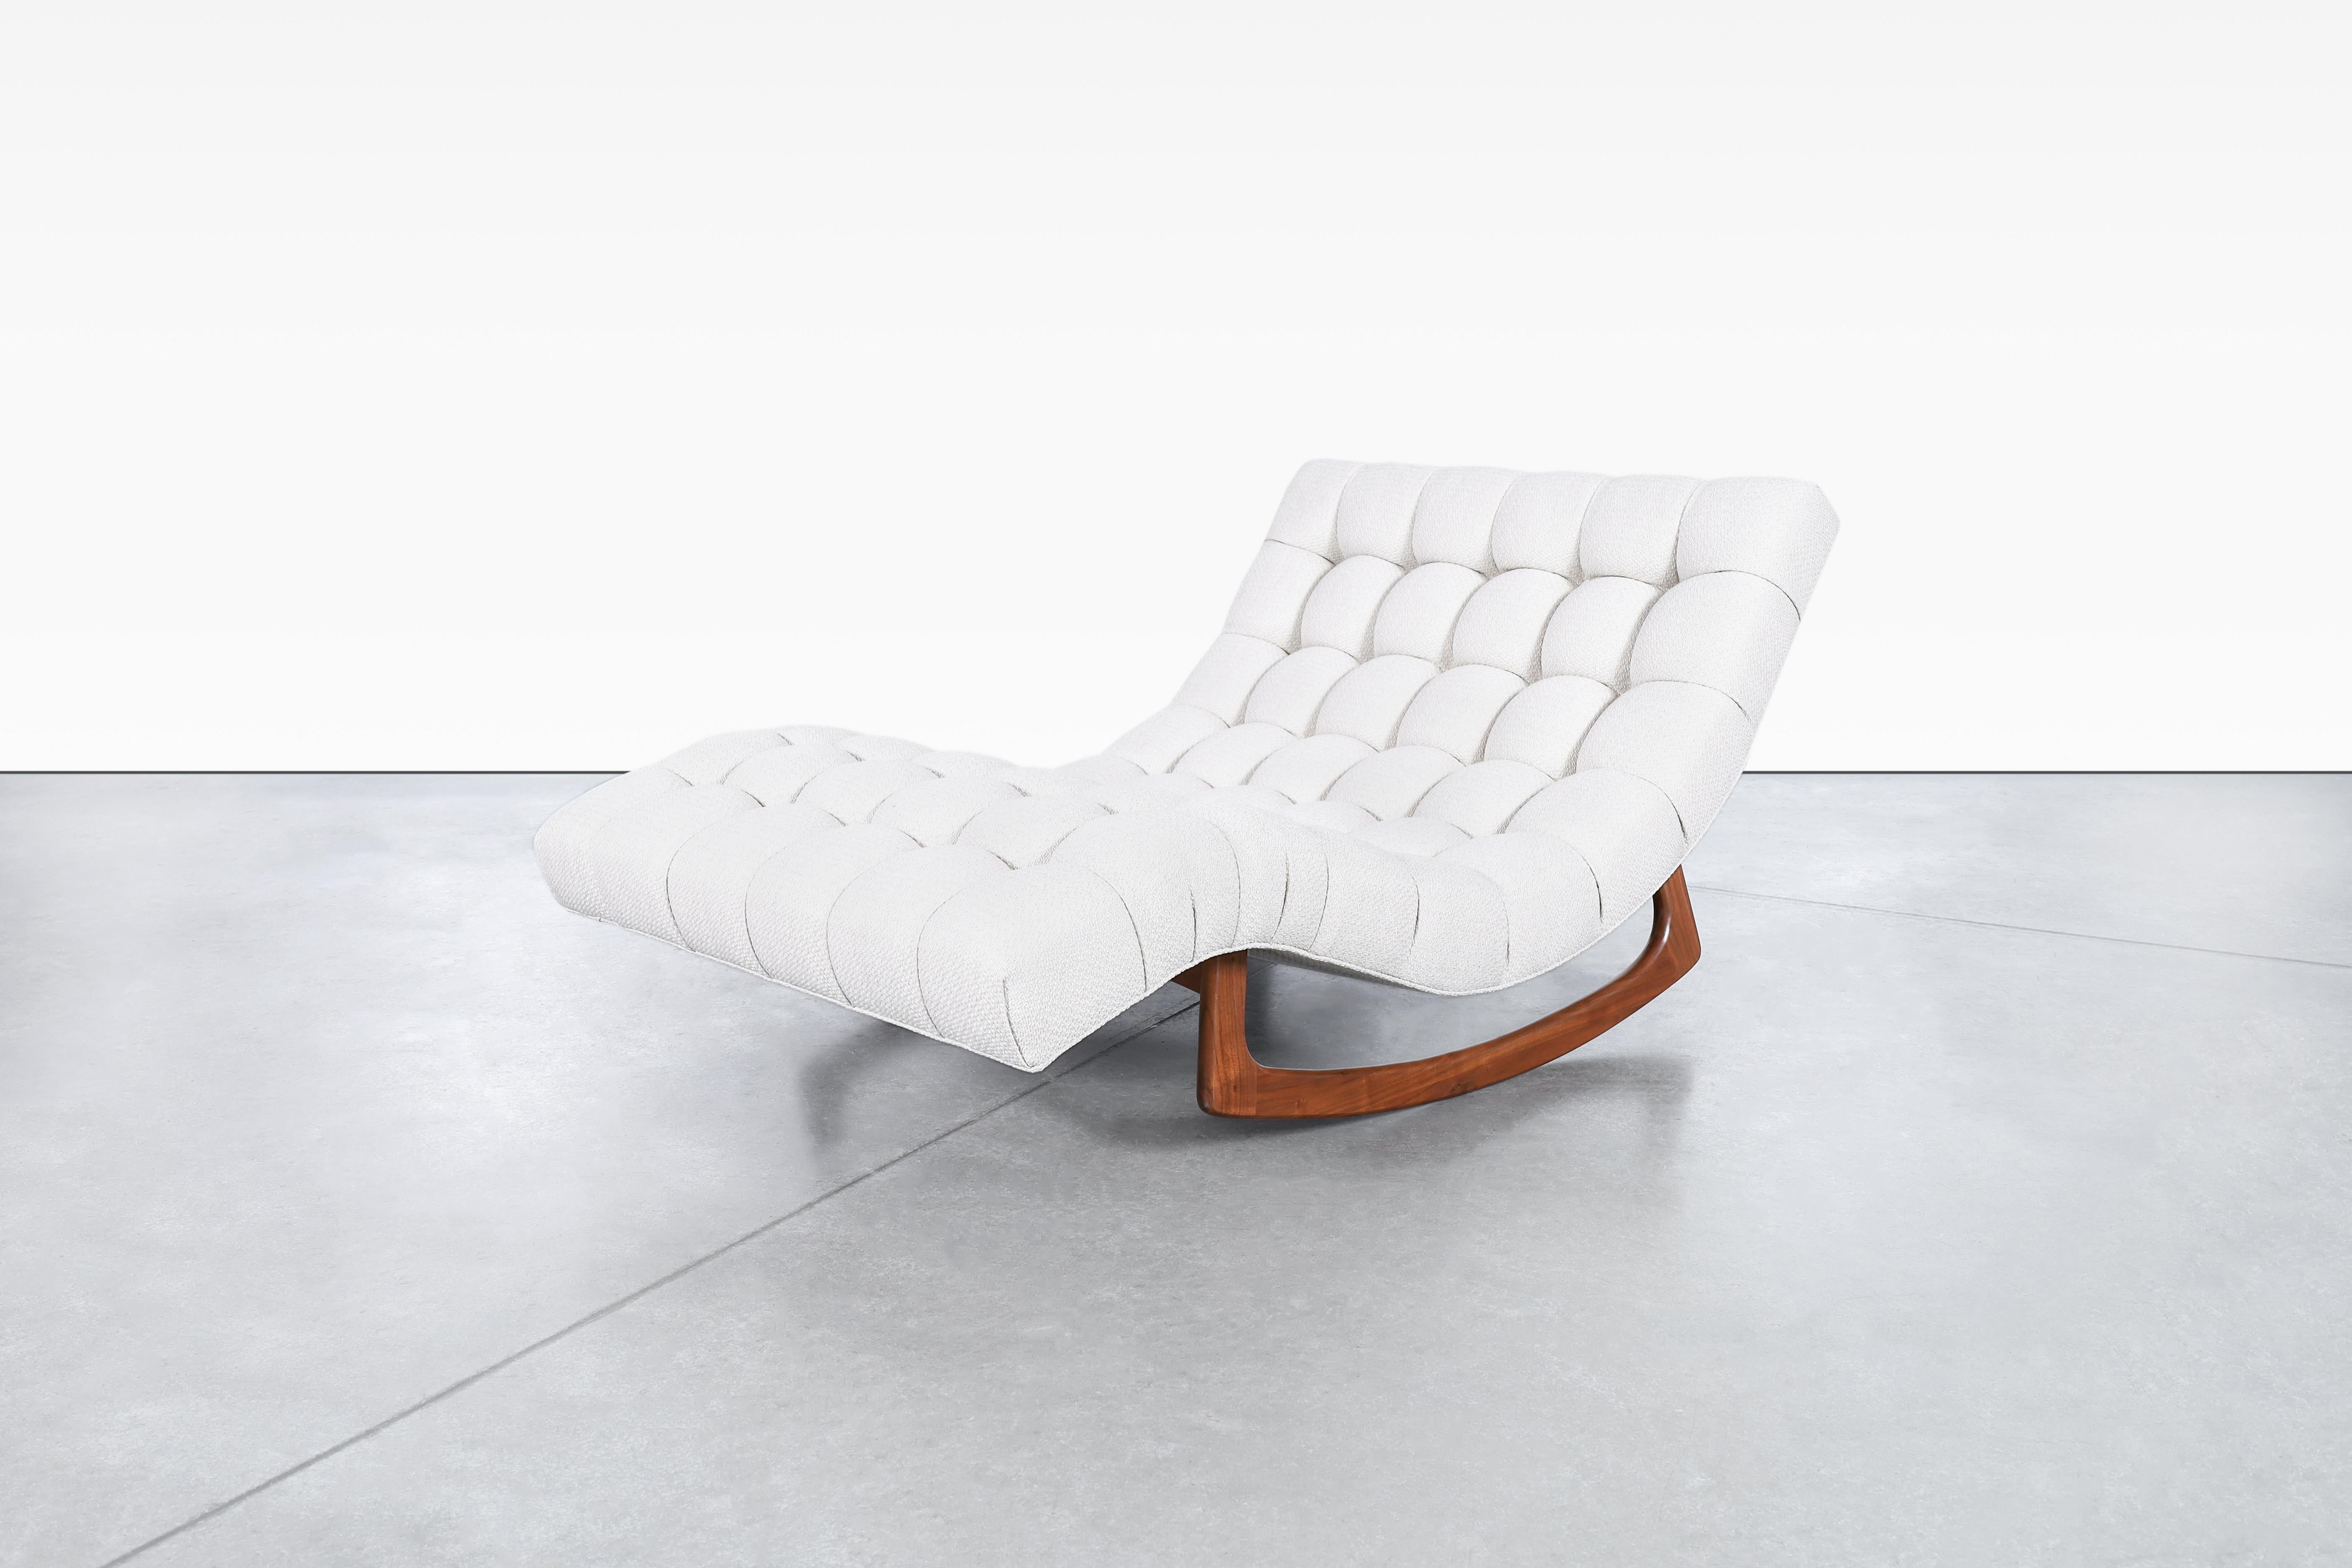 Cette chaise longue vintage est un magnifique meuble conçu par Adrian Pearsall dans les années 1960 et fabriqué par Craft Associates. Cette chaise a été rénovée et retapissée pour lui redonner sa splendeur d'antan. L'assise tuftée en biscuit sur